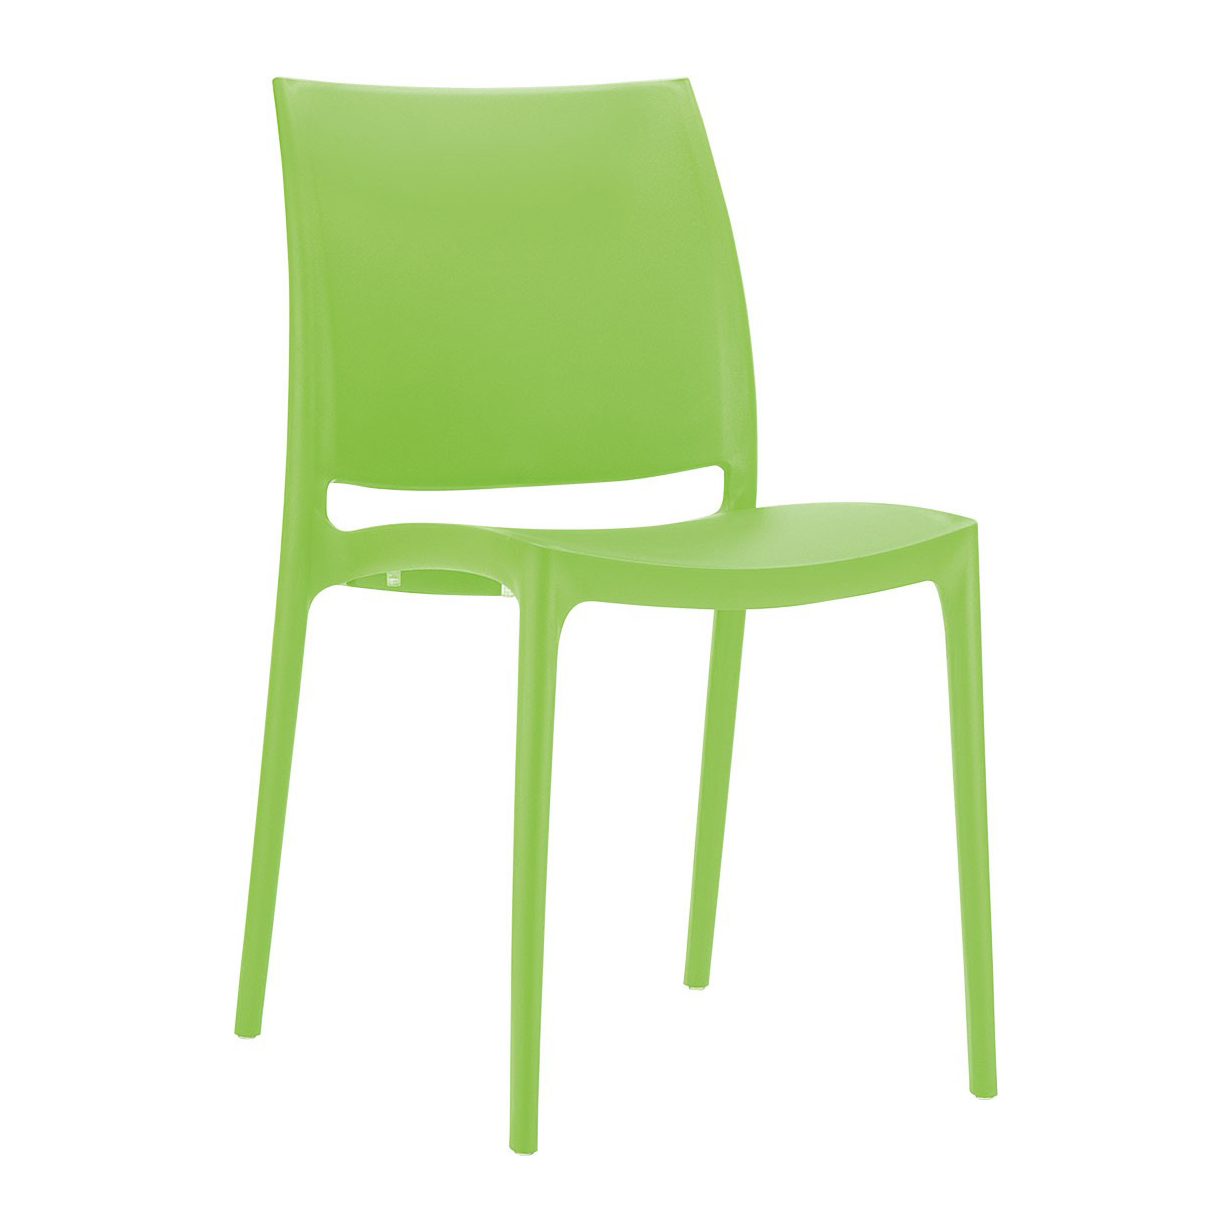 Пластмасов стол - RFG Milano зелен